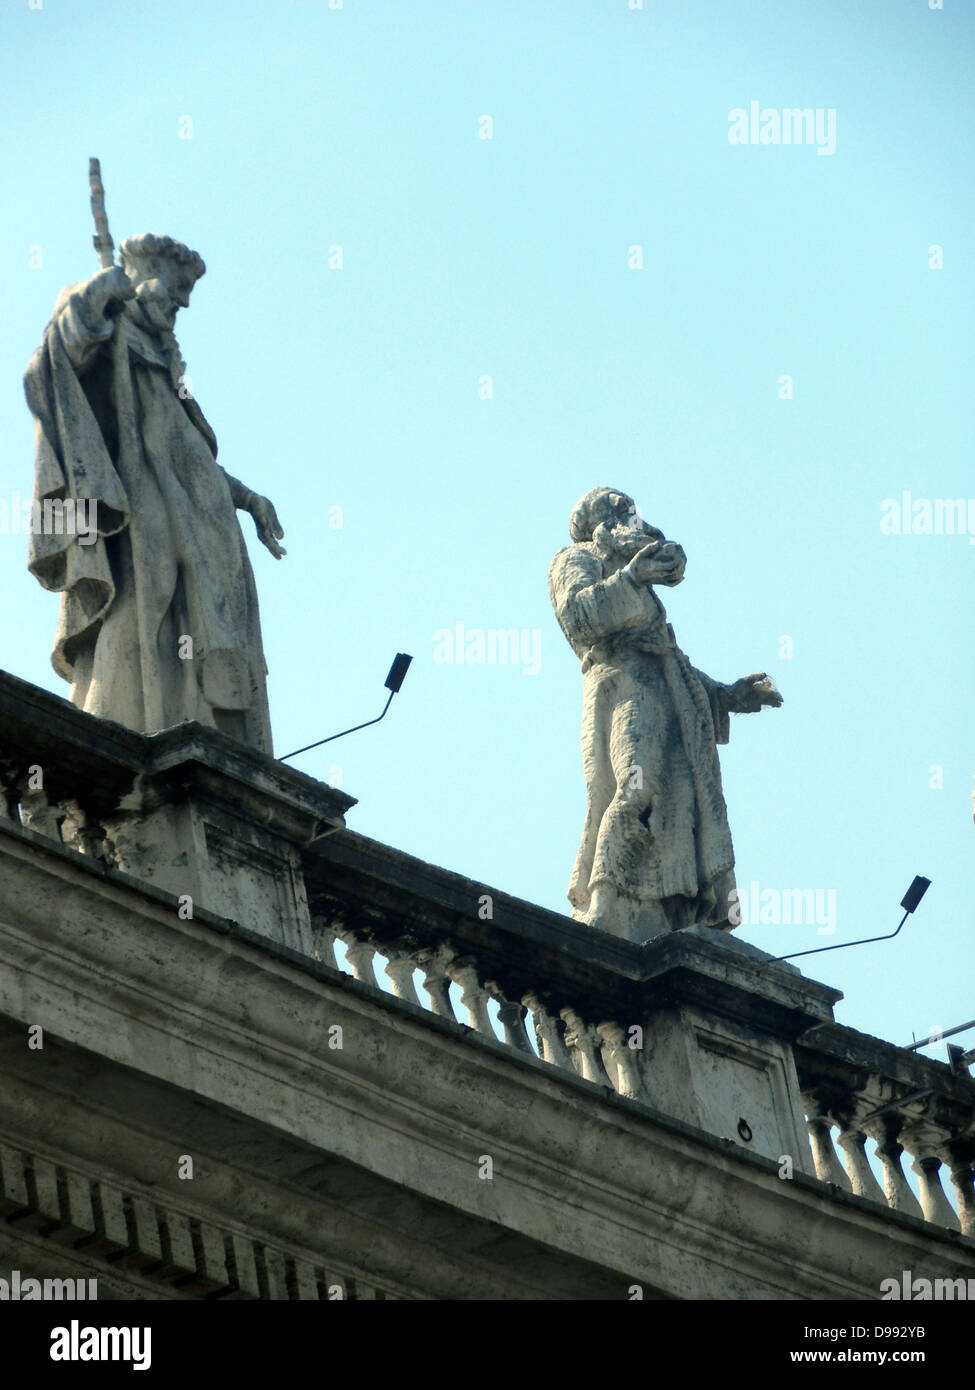 Lo stile barocco sculture in Vaticano Museo Giardini; Roma. Il papa Giulio II fondò i musei all'inizio del XVI secolo. Foto Stock